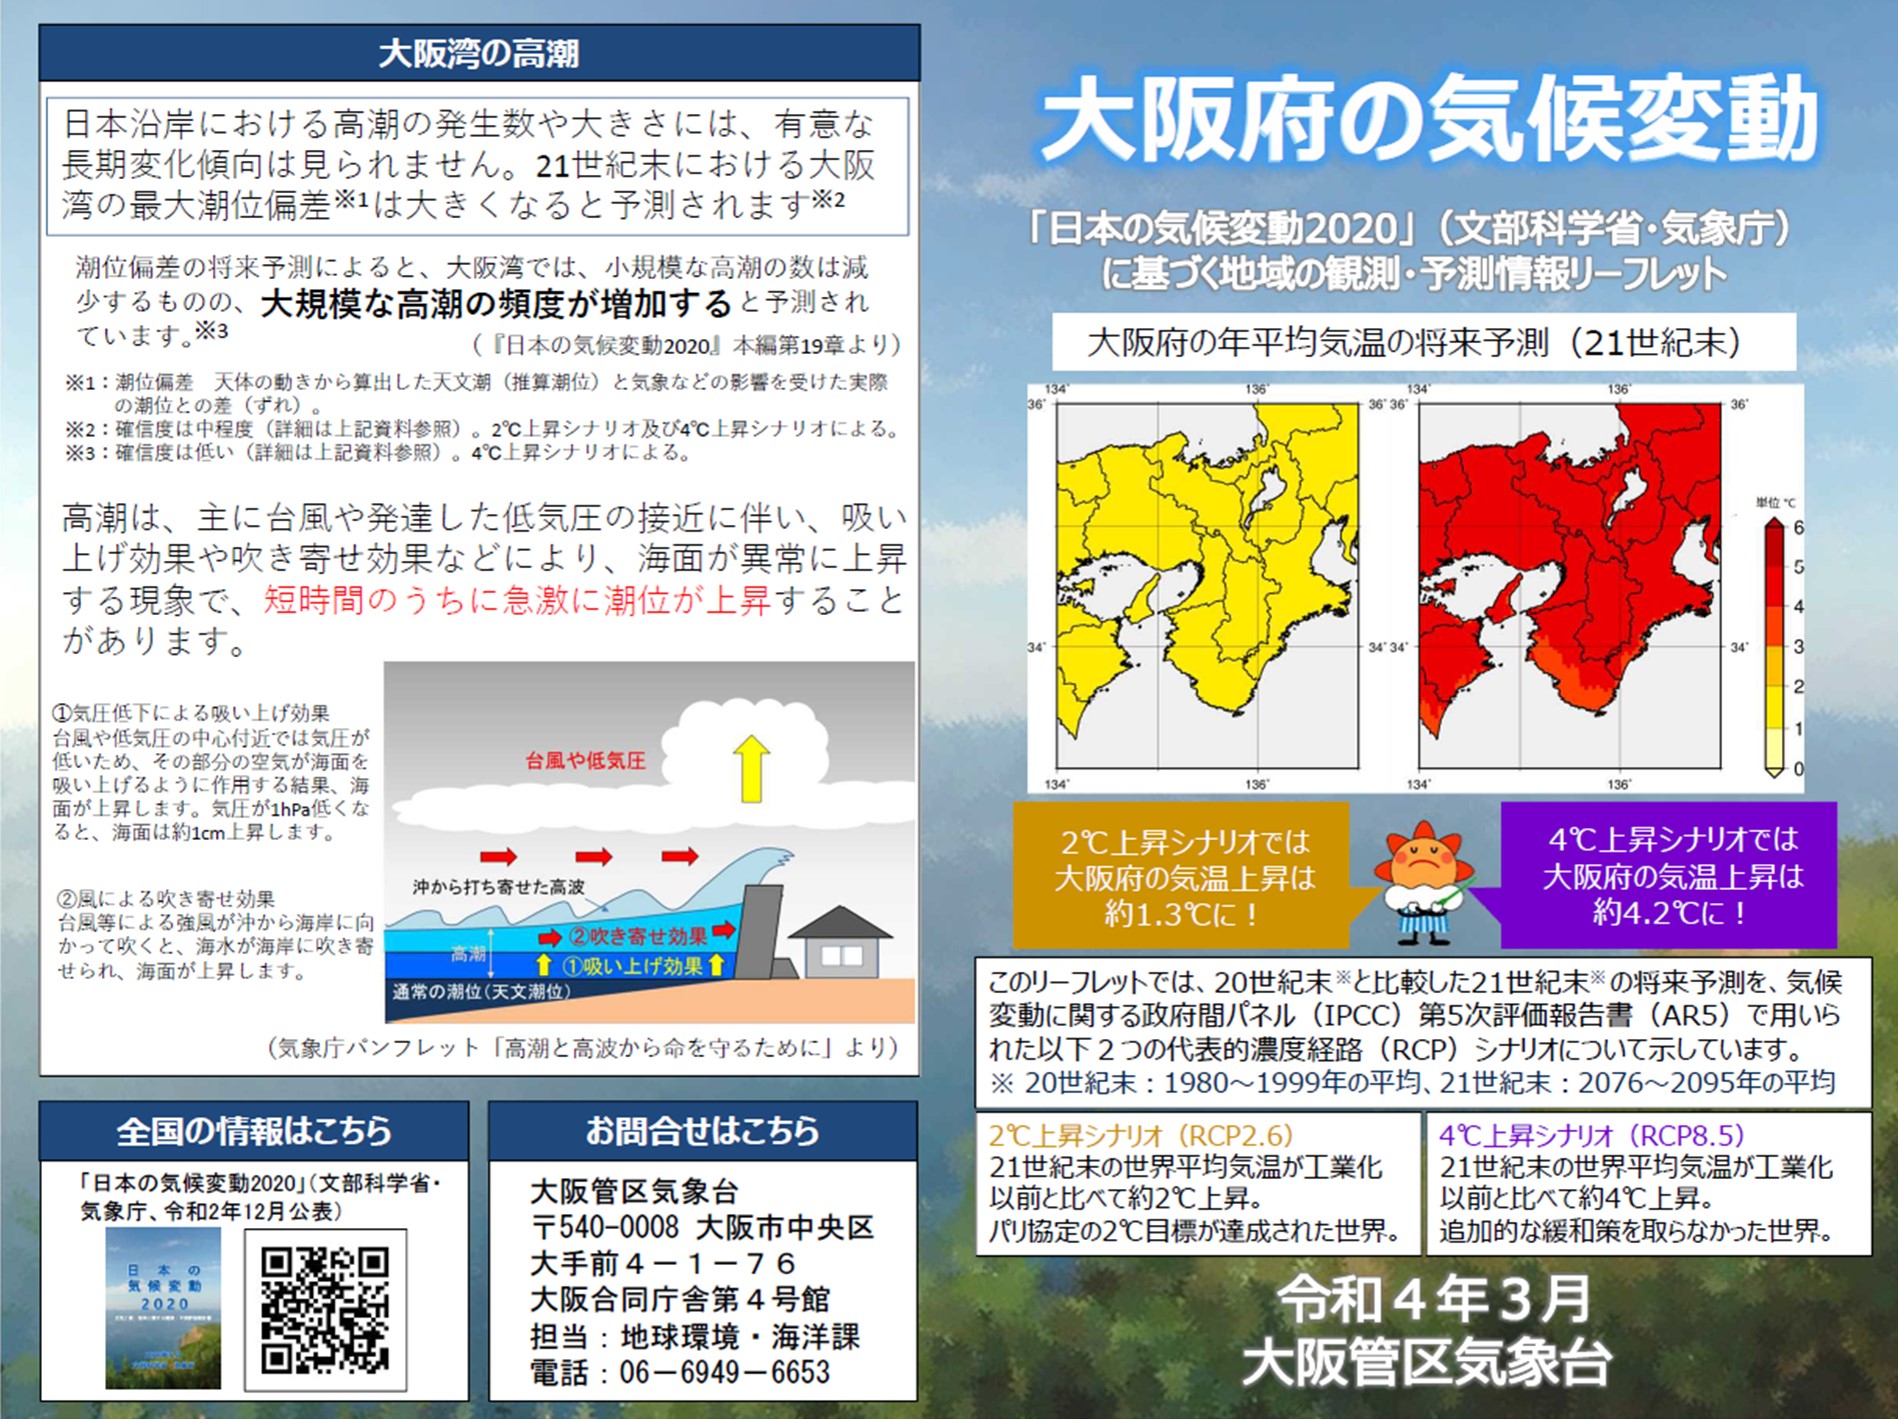 大阪管区気象台により「近畿・中国・四国地方の各府県版気候変動リーフレット」が 作成されました